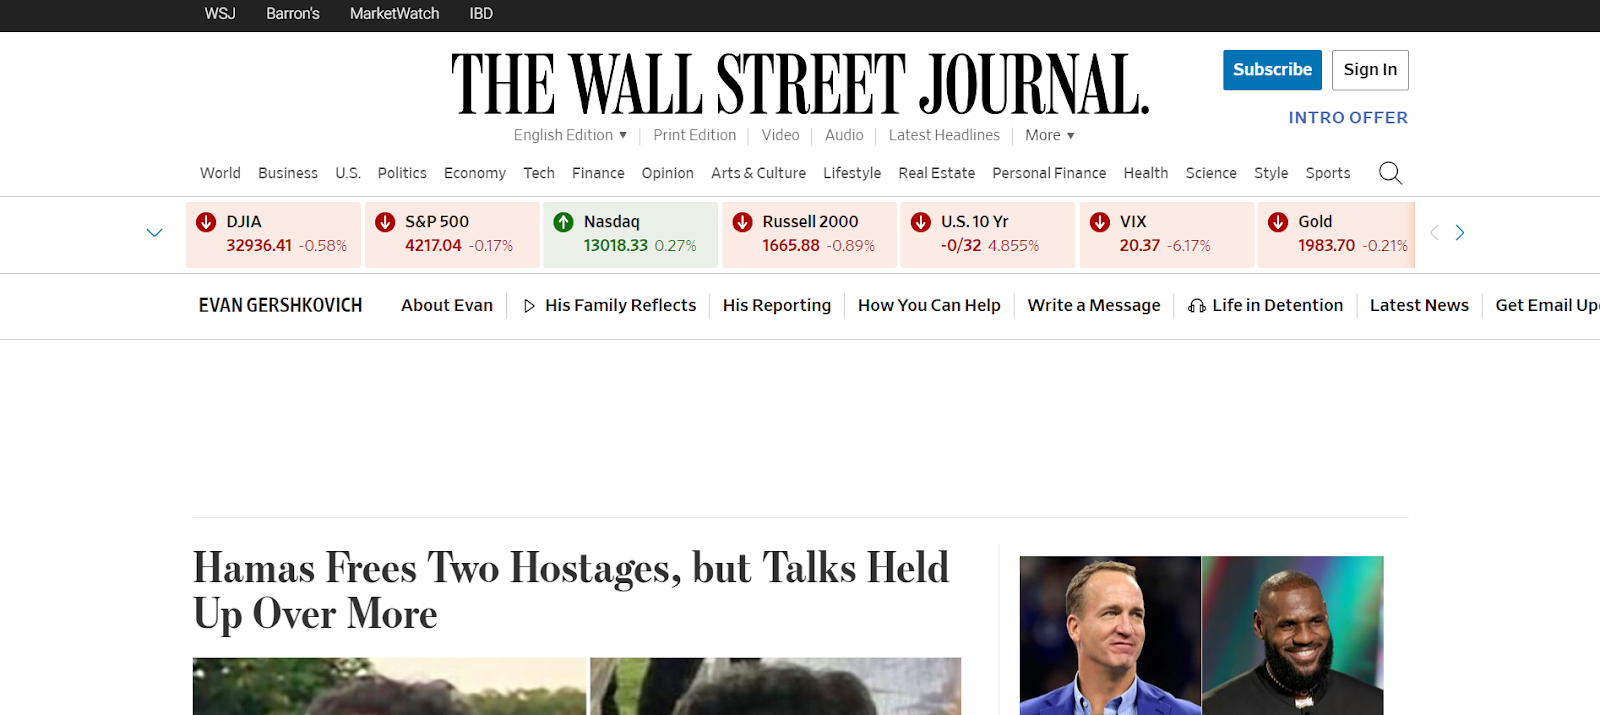 9. Il Wall Street Journal